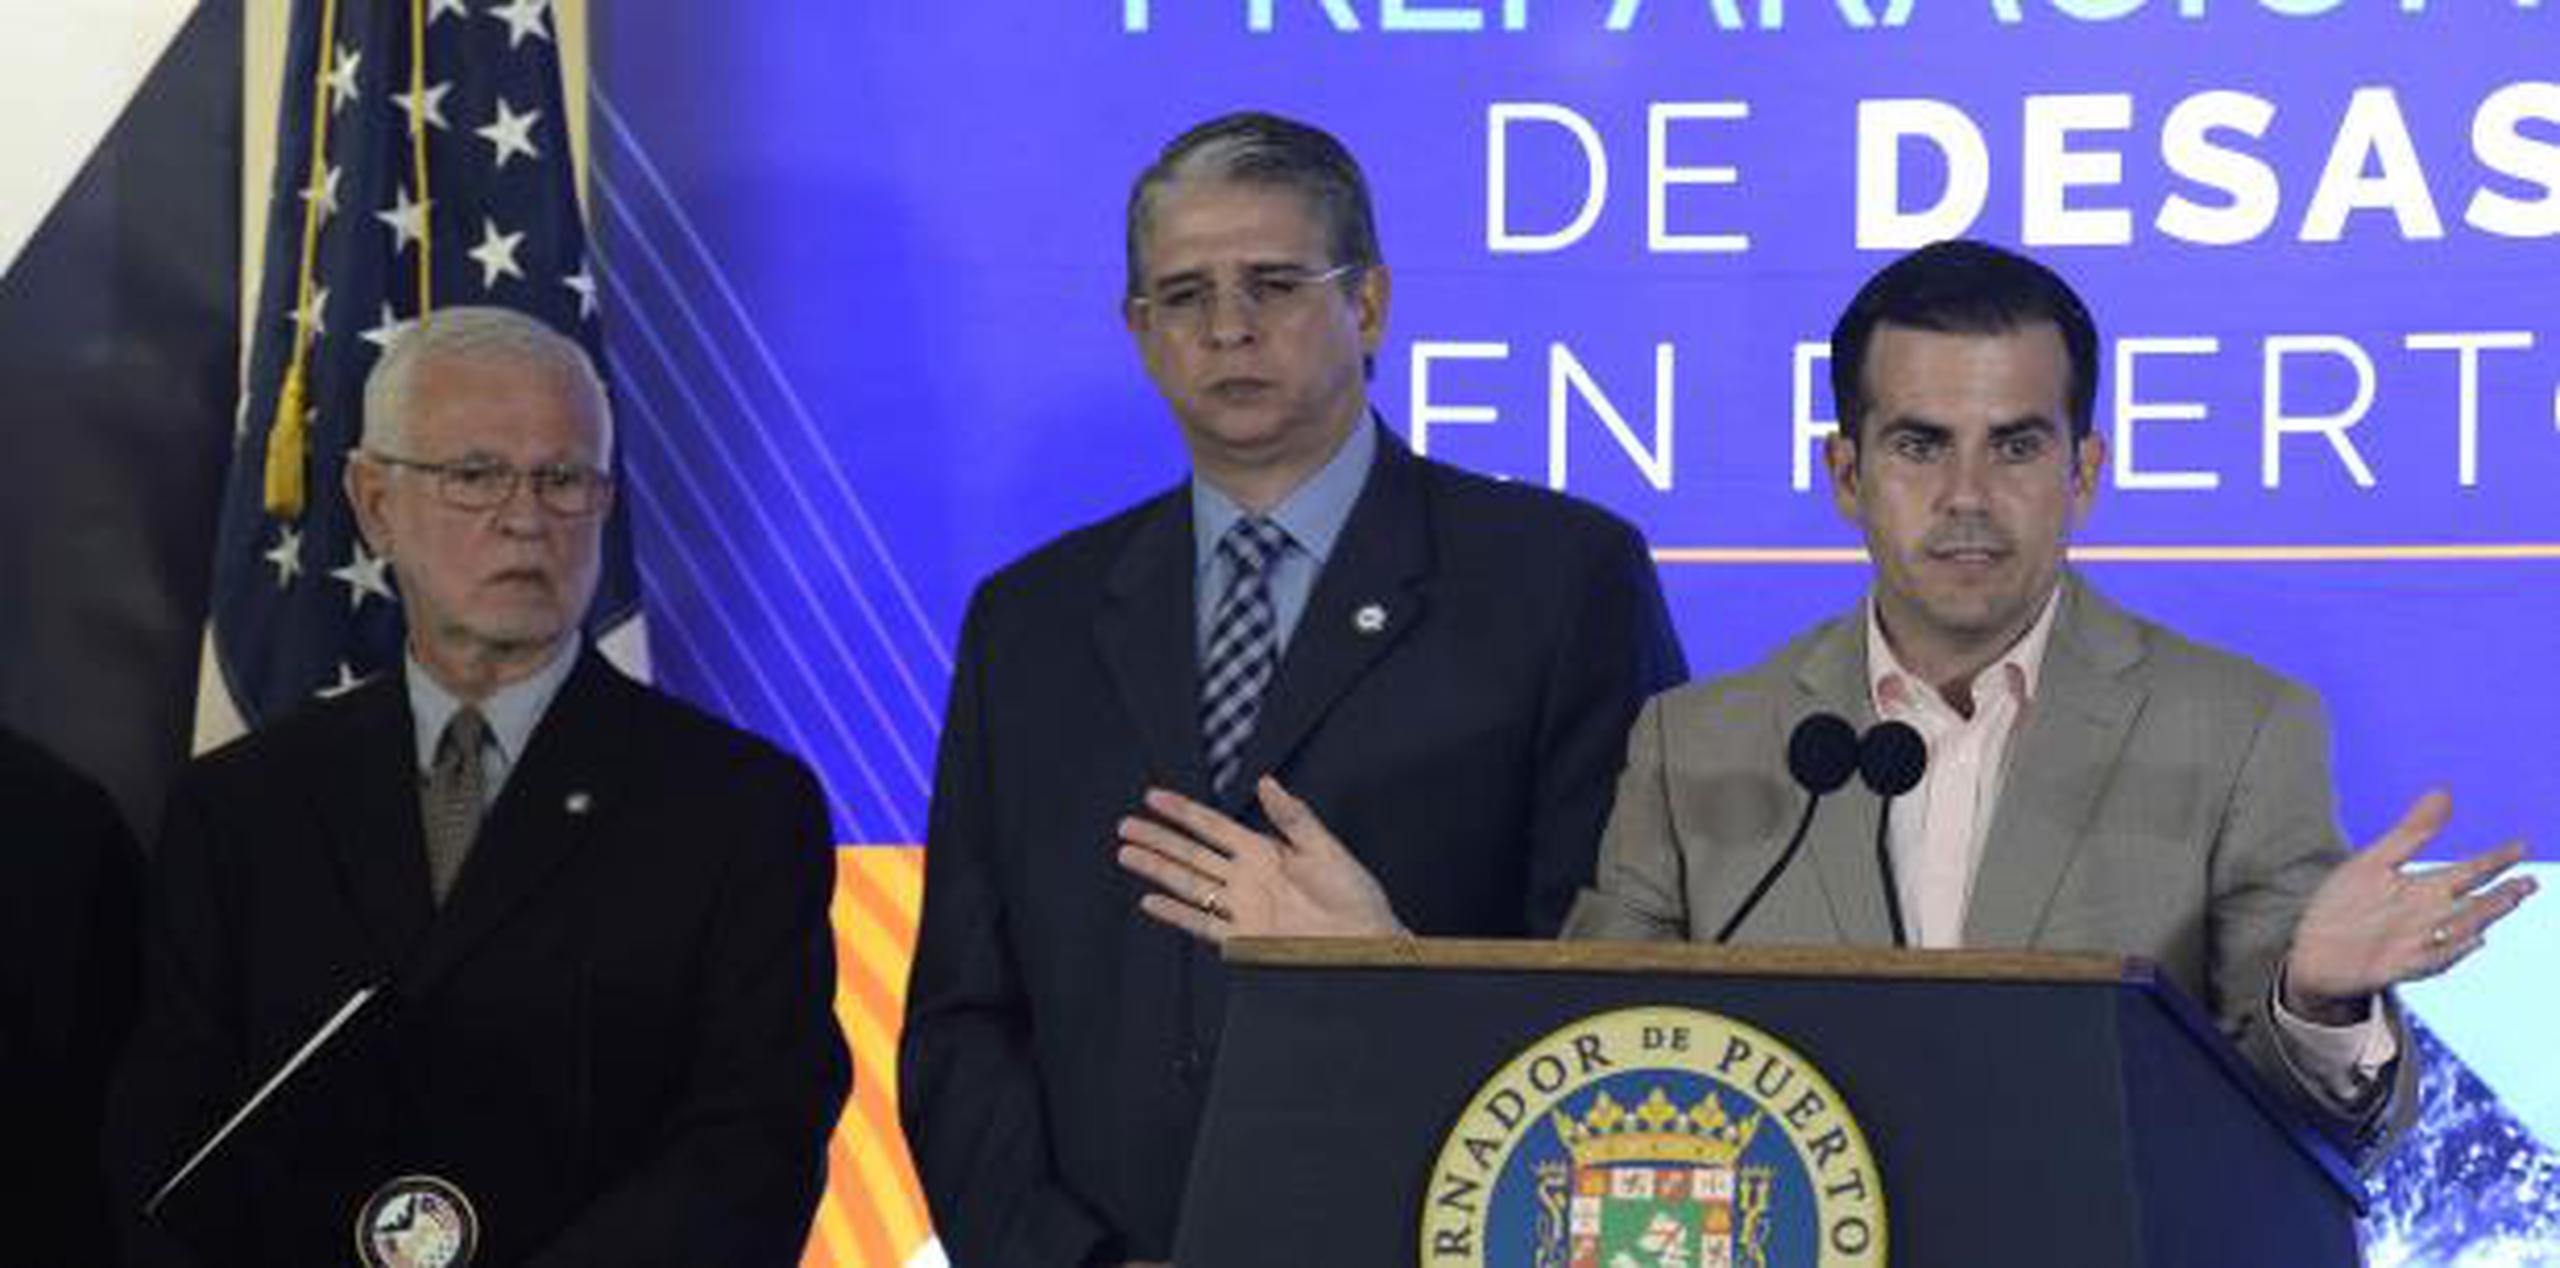 El gobernador Ricardo Rosselló ofrece declaraciones durante la Convención de Preparación y Manejo de Desastre que se efectuó en mayo pasado. (Archivo)